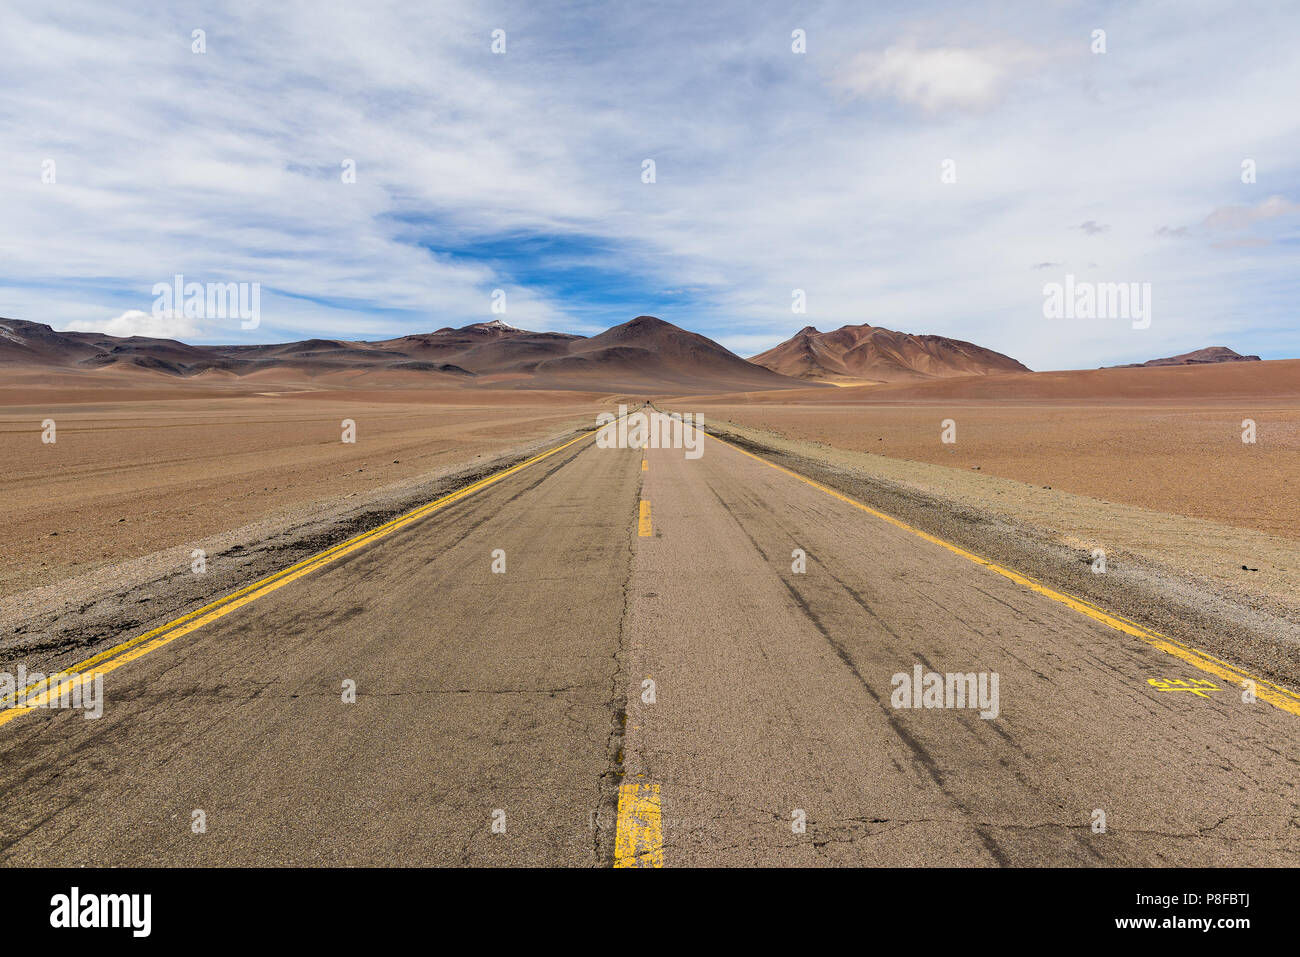 Road through Mountain landscape, San Pedro de Atacama, Antofagasta, Chile Stock Photo